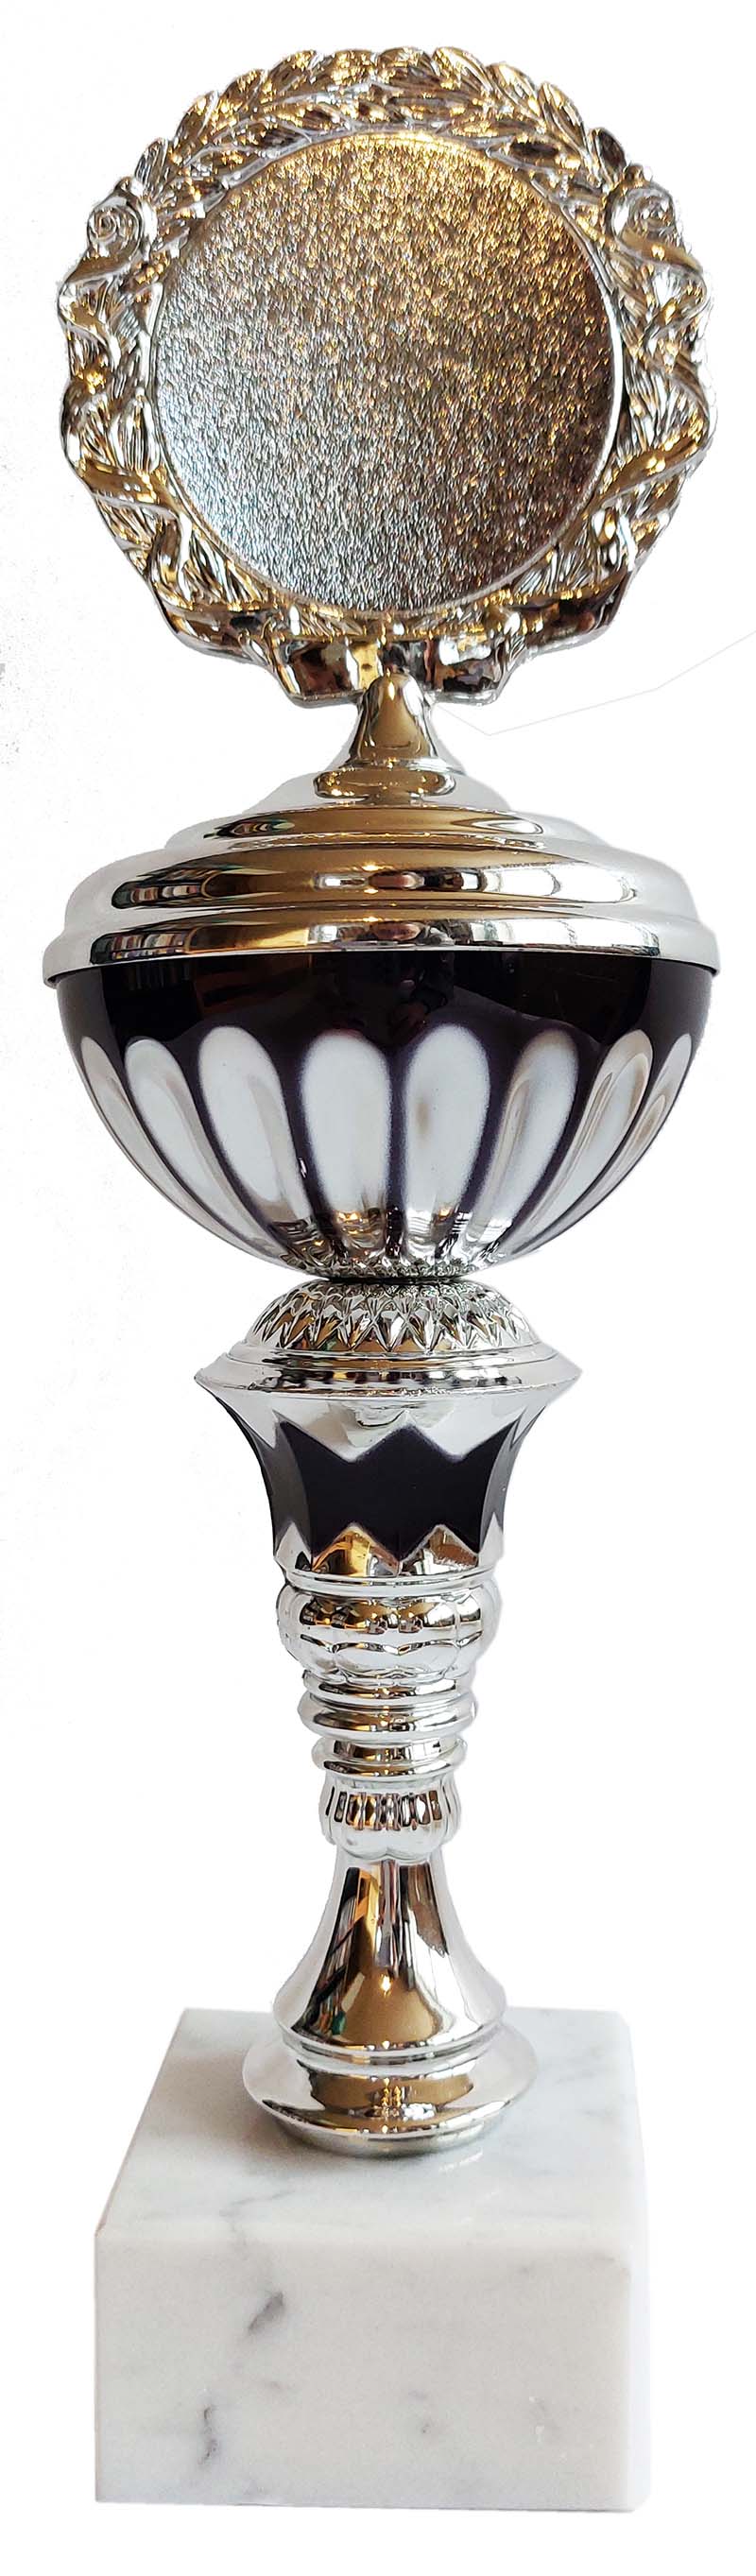 Pokal 1487 Silber-Schwarz - Einzelpokal